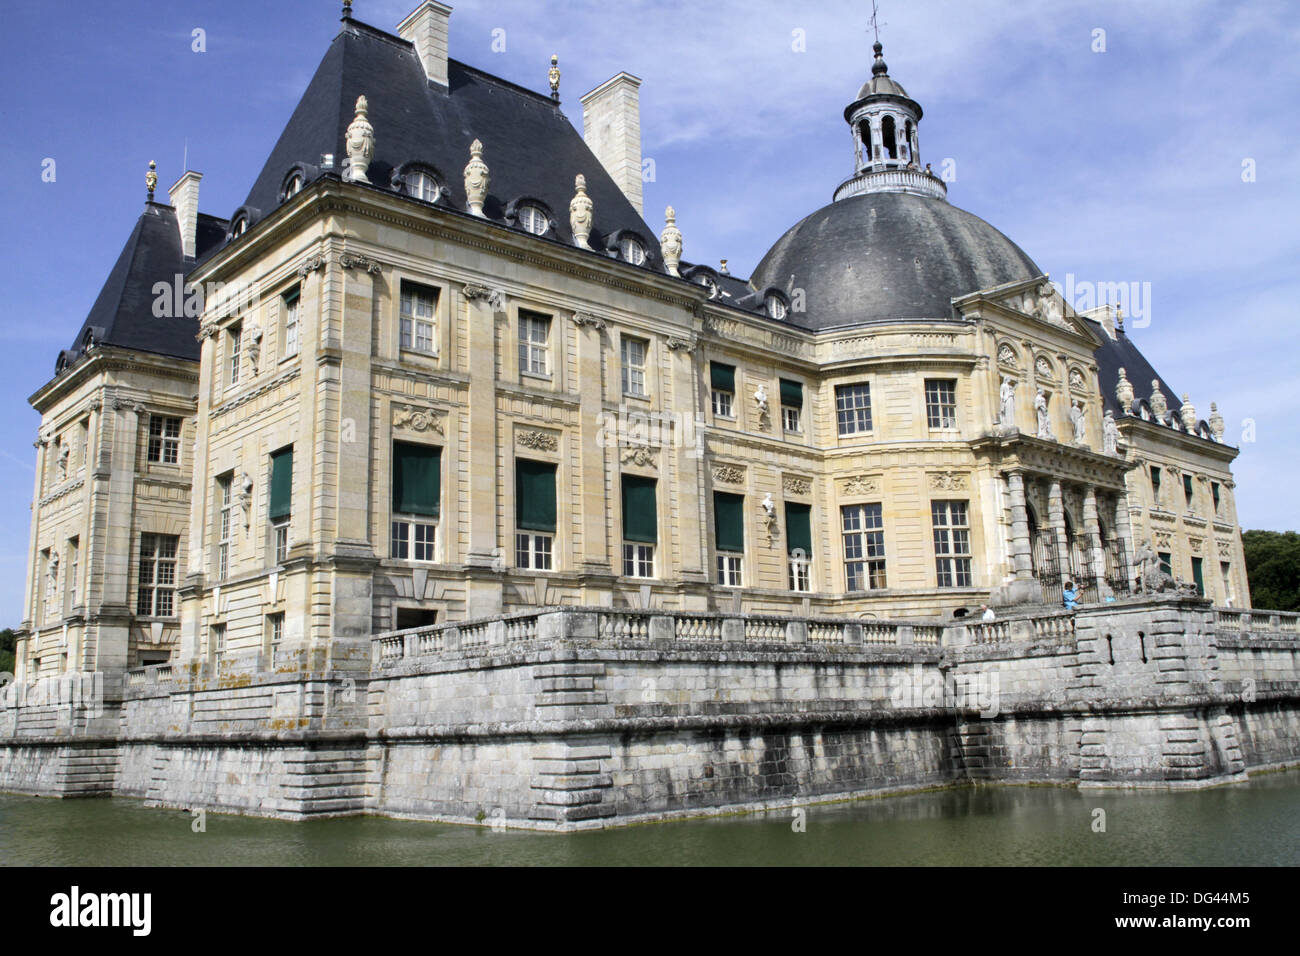 South facade, Vaux-le-Vicomte chateau, Seine et Marne, France, Europe Stock Photo